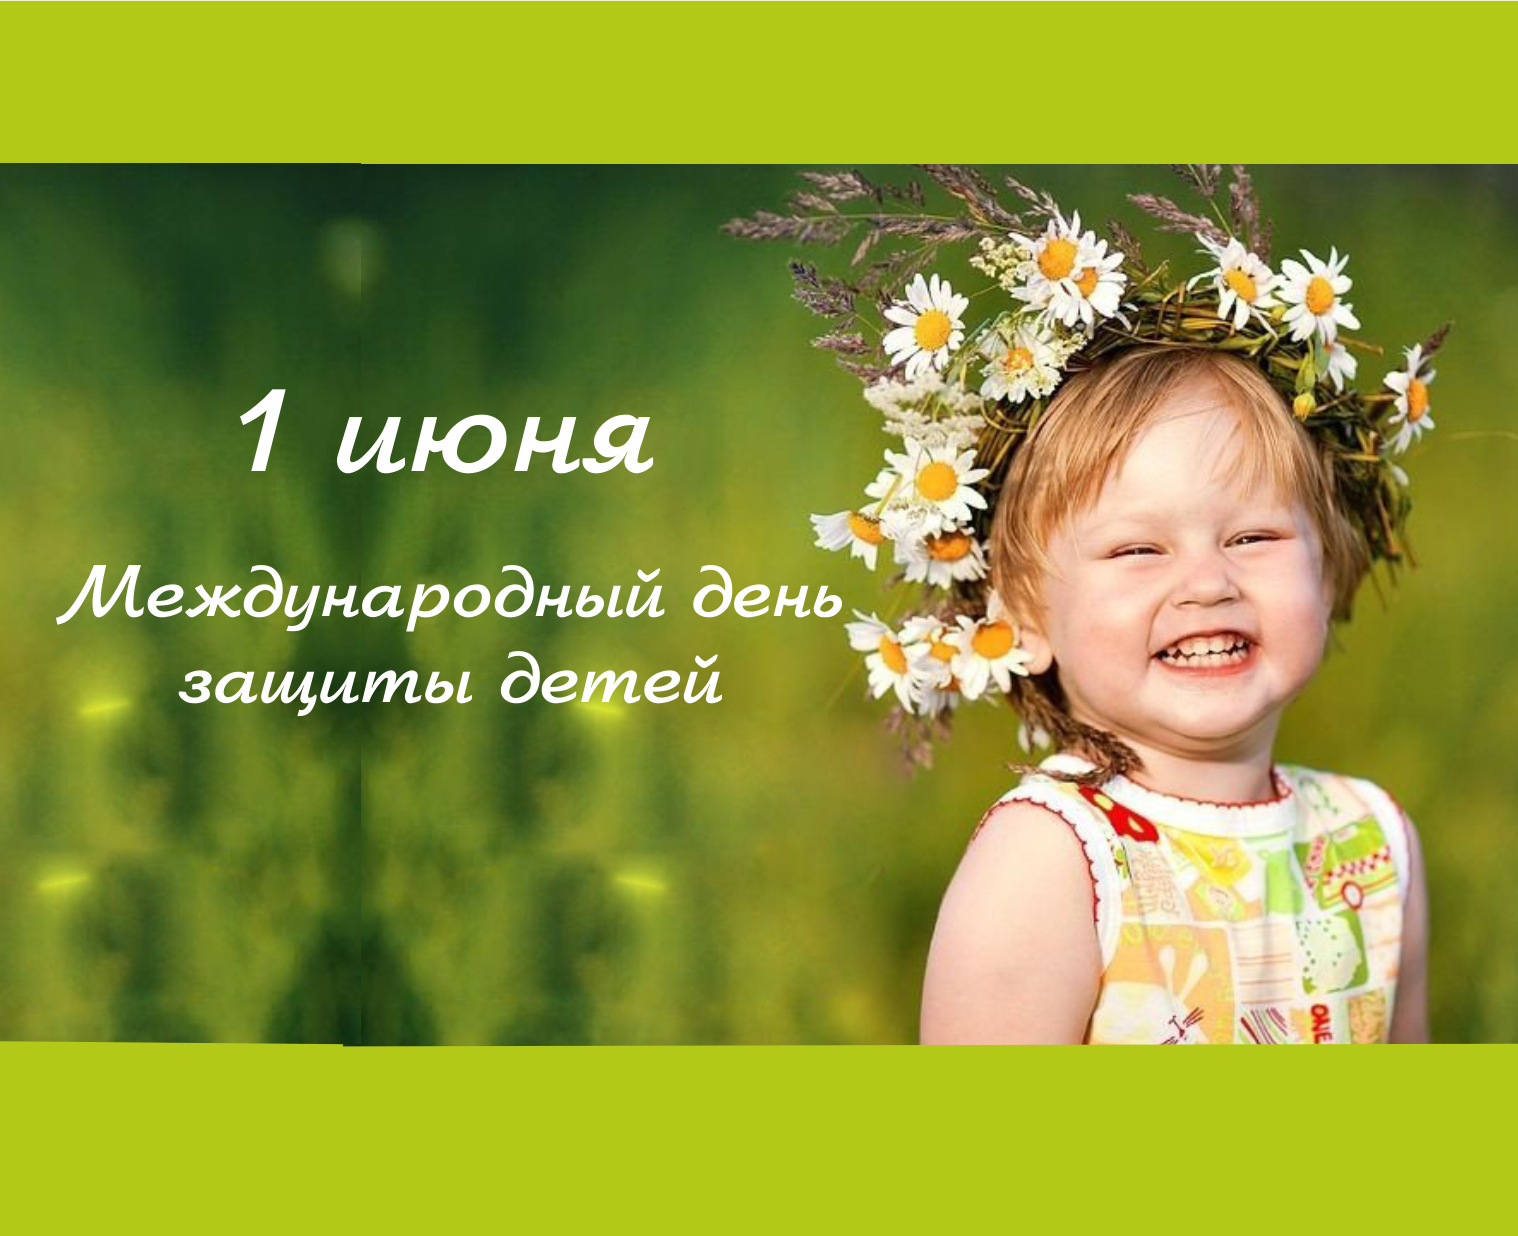 Профком сотрудников ВятГУ приглашает на праздничное мероприятие, посвященное Дню защиты детей